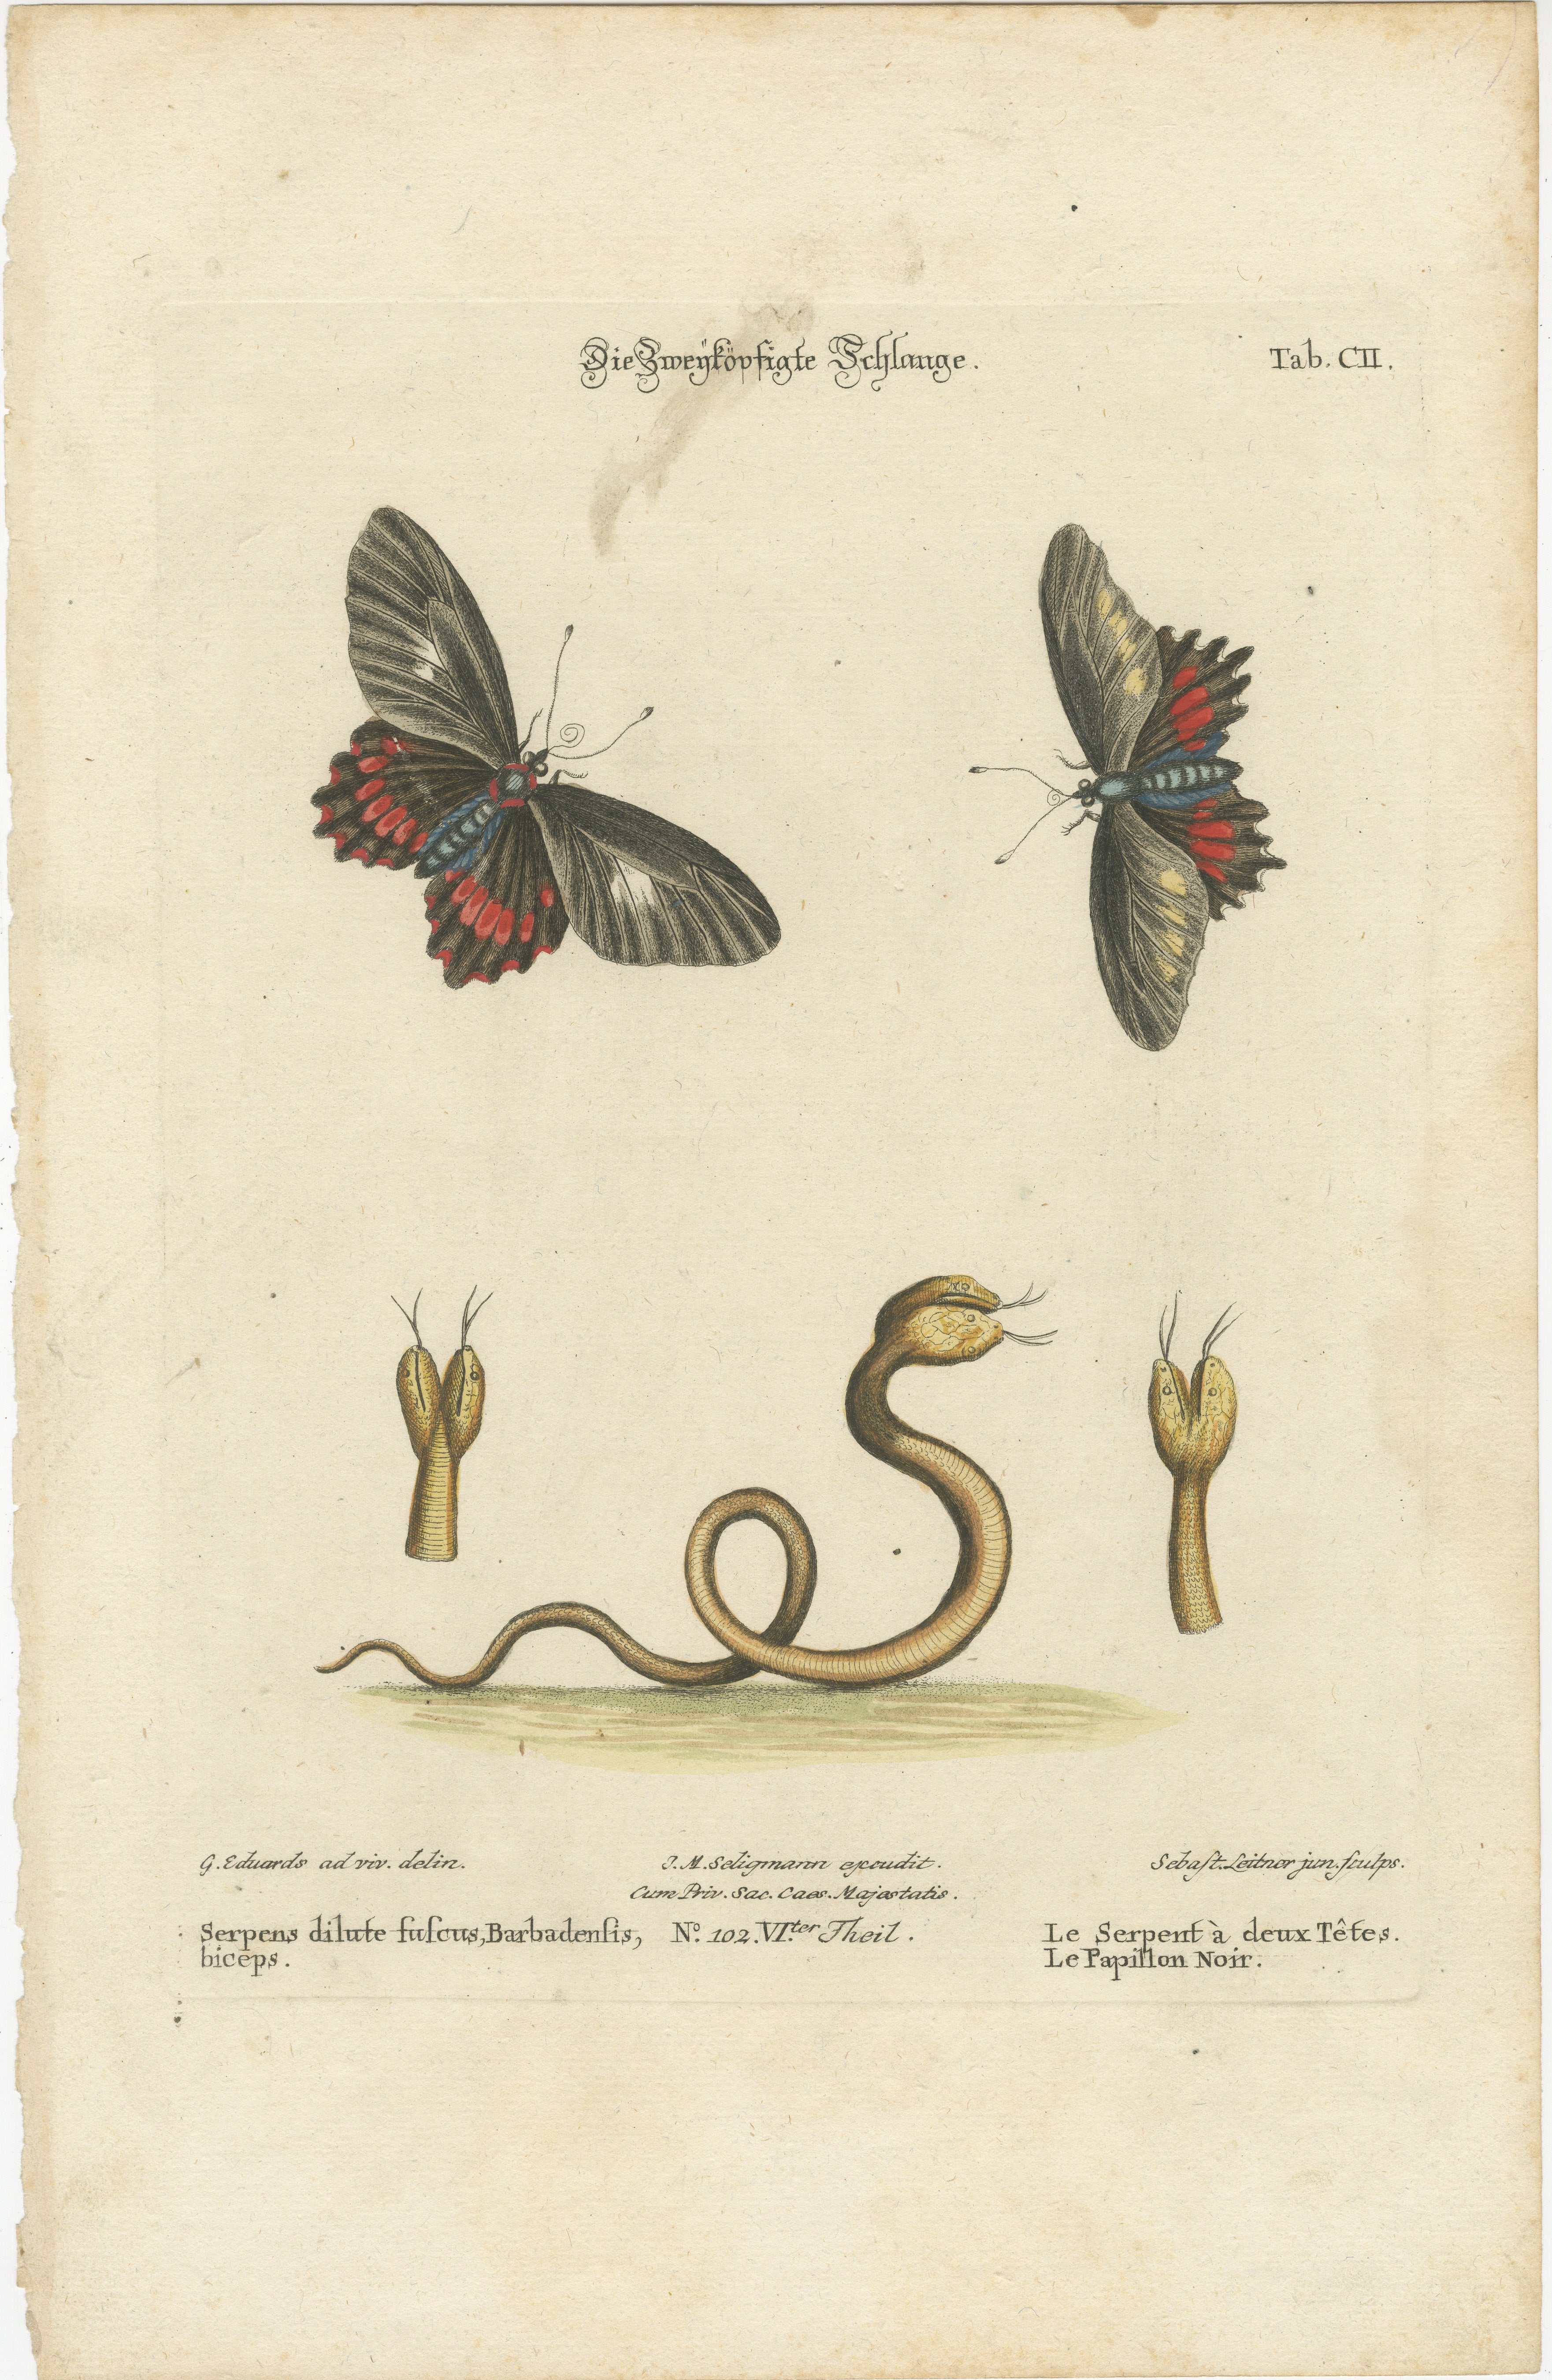 Il s'agit d'une gravure coloriée à la main tirée de l'œuvre de Johann Michael Seligmann,  représentant un papillon et un serpent à deux têtes. 

Vous trouverez ci-dessous la transcription et la traduction du texte :

- Die Zweykopfige Schlange